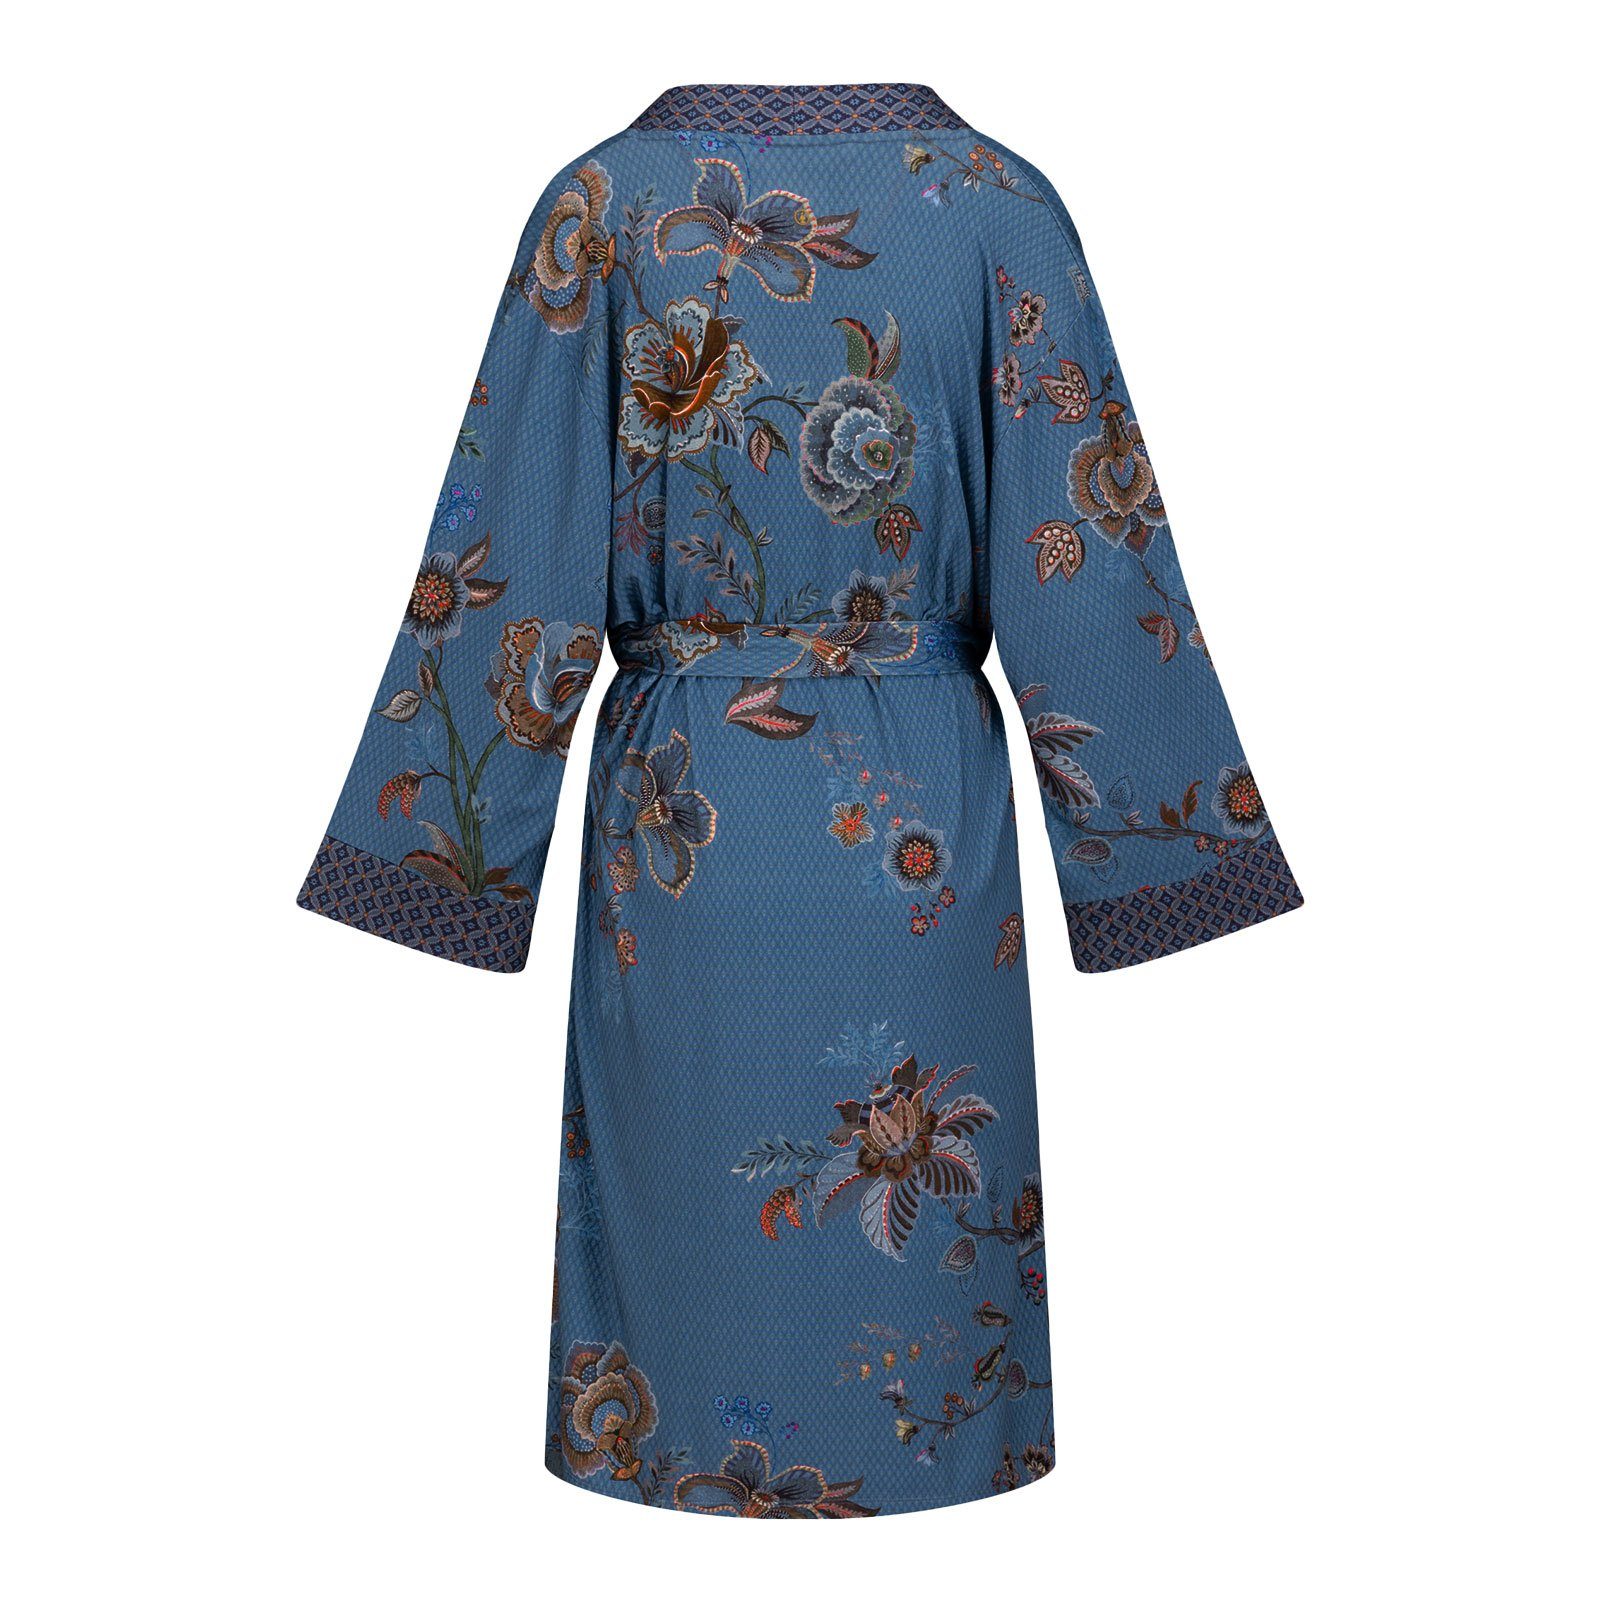 zum Viskosemix PiP Fiore, blue mit breitem Naomi Kimono Gürtel binden, Studio fiore aus geschmeidigem Viskose, Cece wadenlang, cece Bindeverschluss,